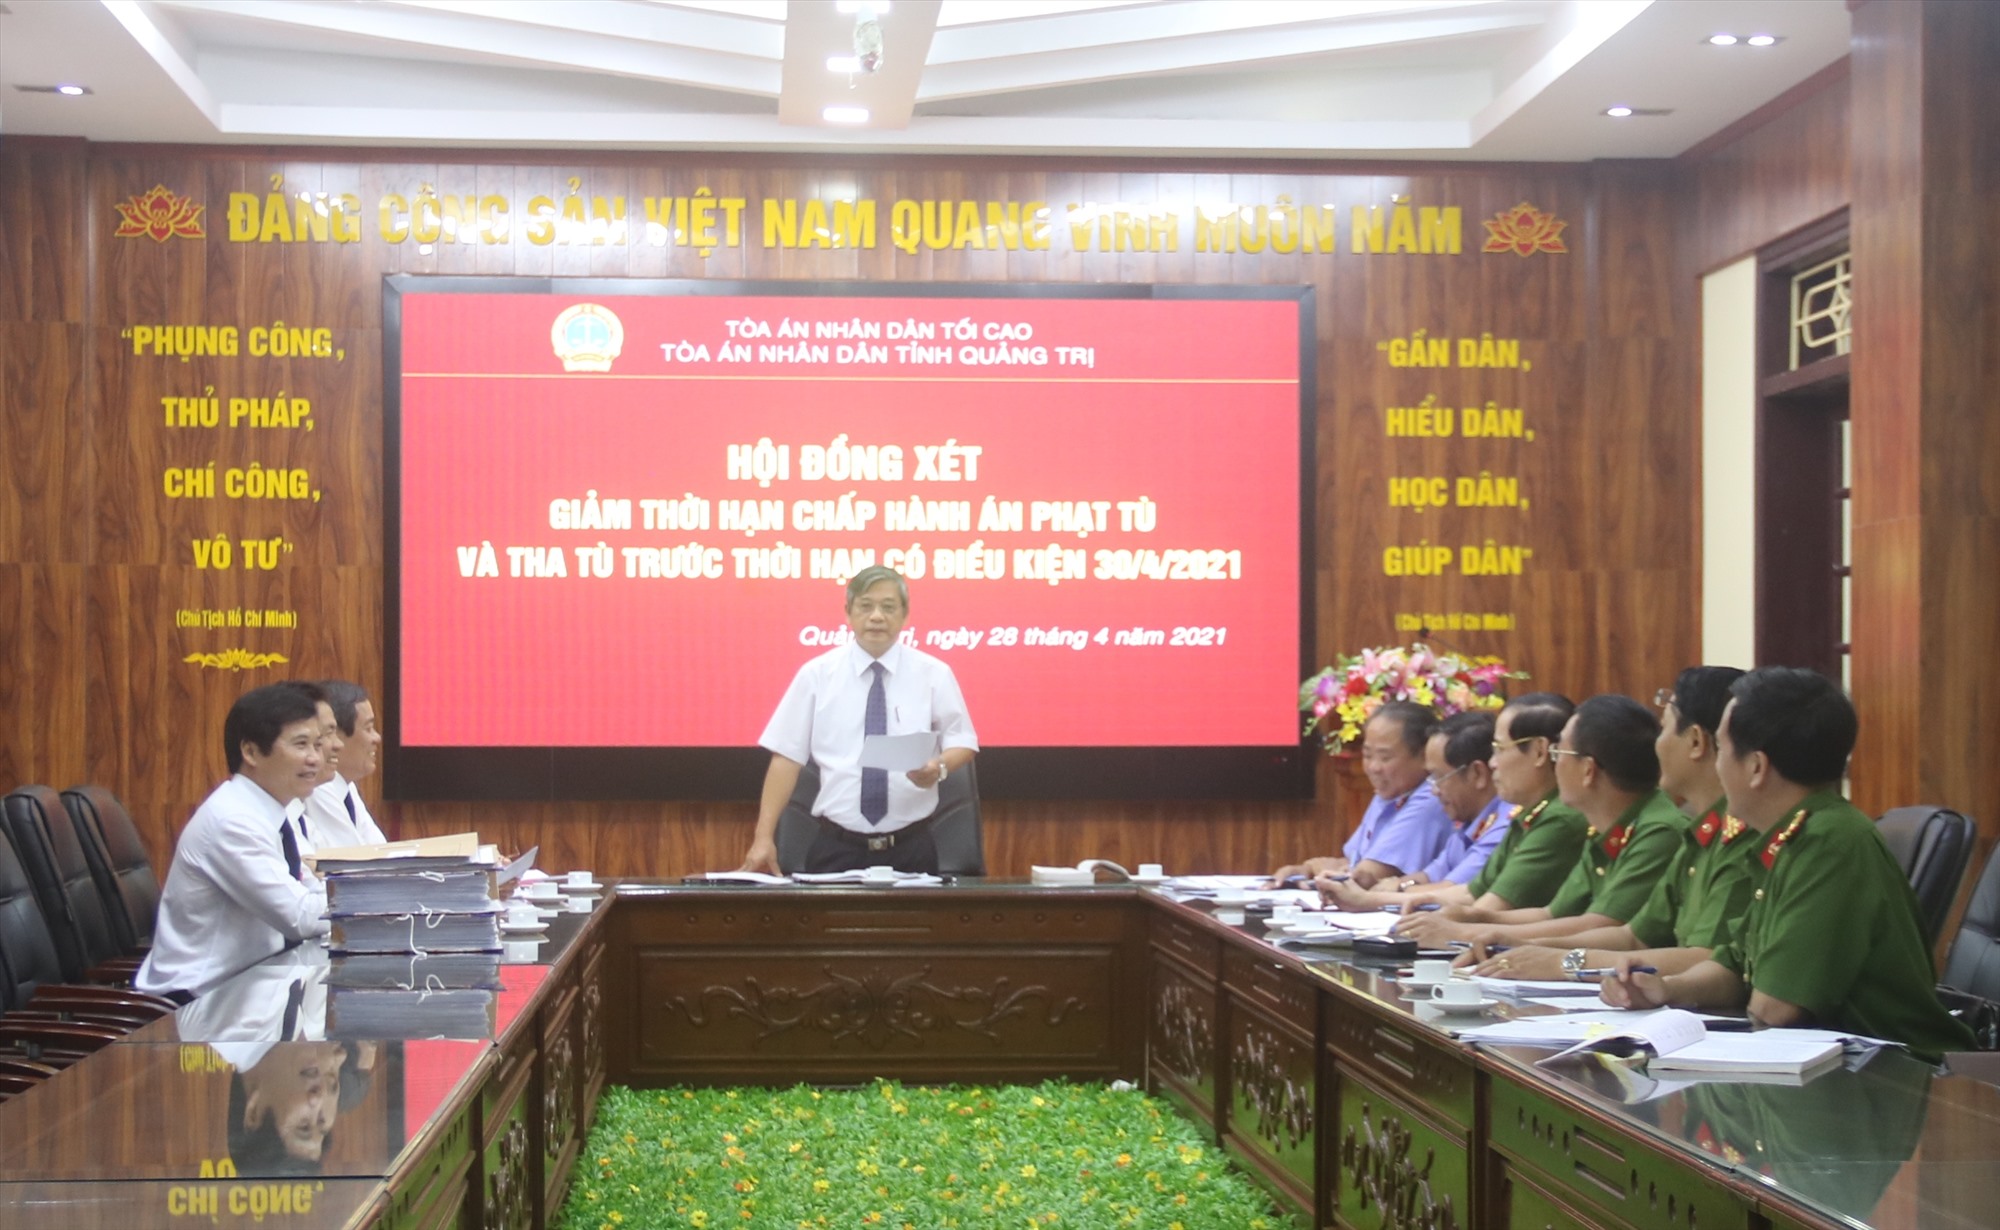 Chánh án TAND tỉnh, Chủ tịch Hội đồng xét giảm thời hạn chấp hành án phạt tù tỉnh Lê Hồng Quang đưa ra kết luận của Hội đồng về giảm án - Ảnh: N.B